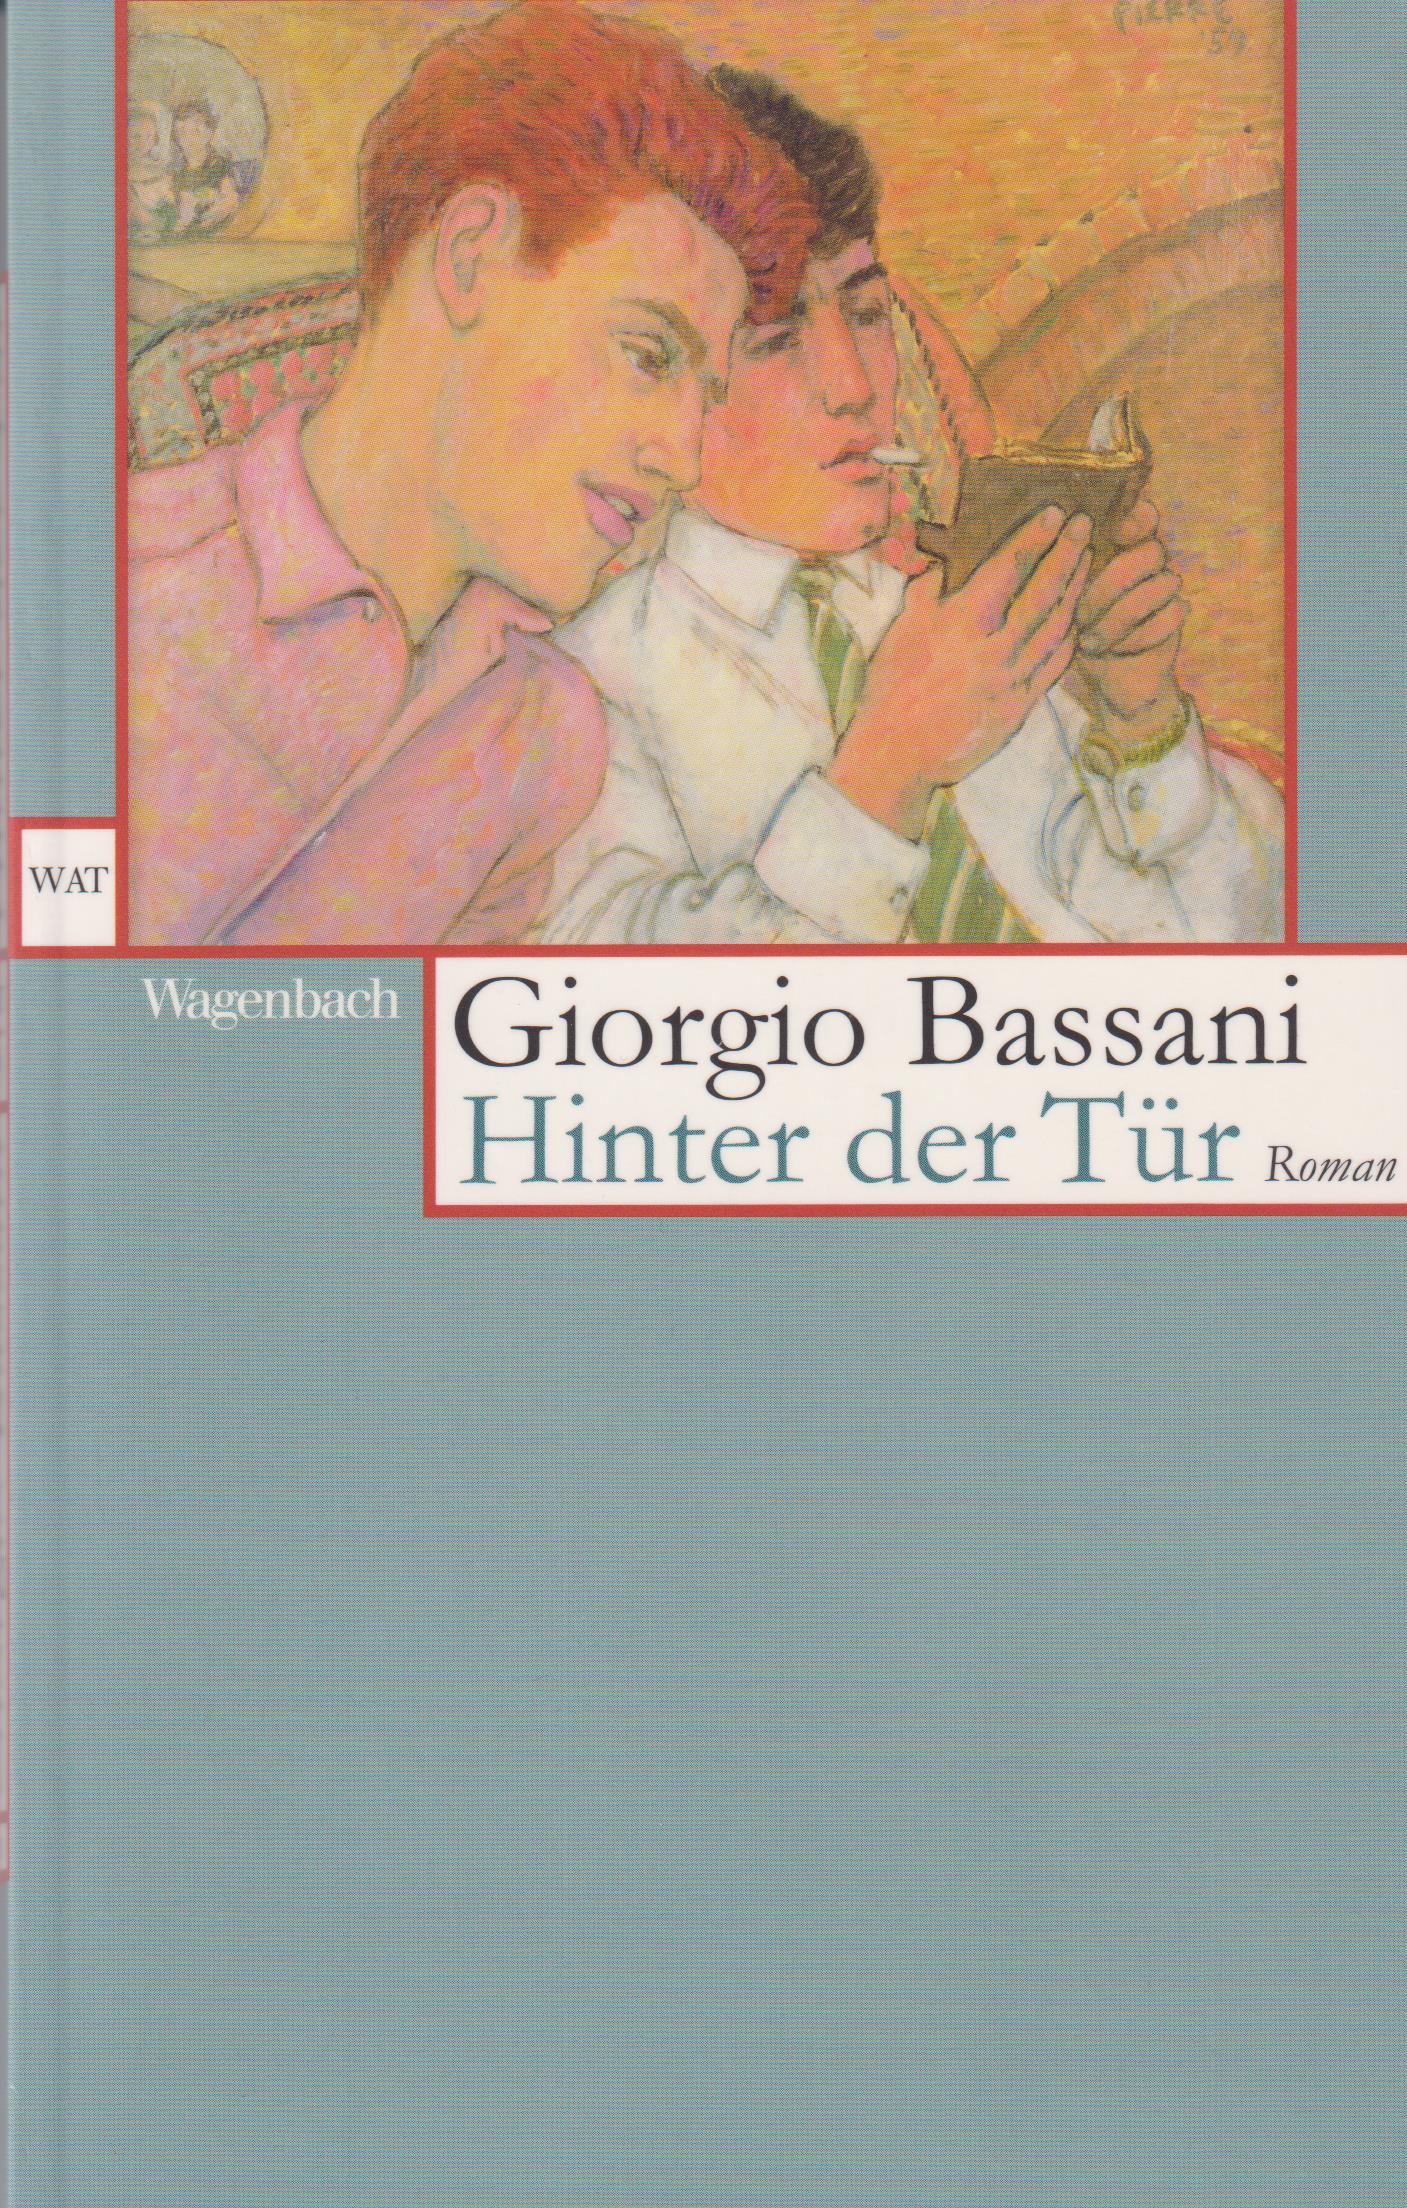 Hinter der Tür - Bassani, Giorgio